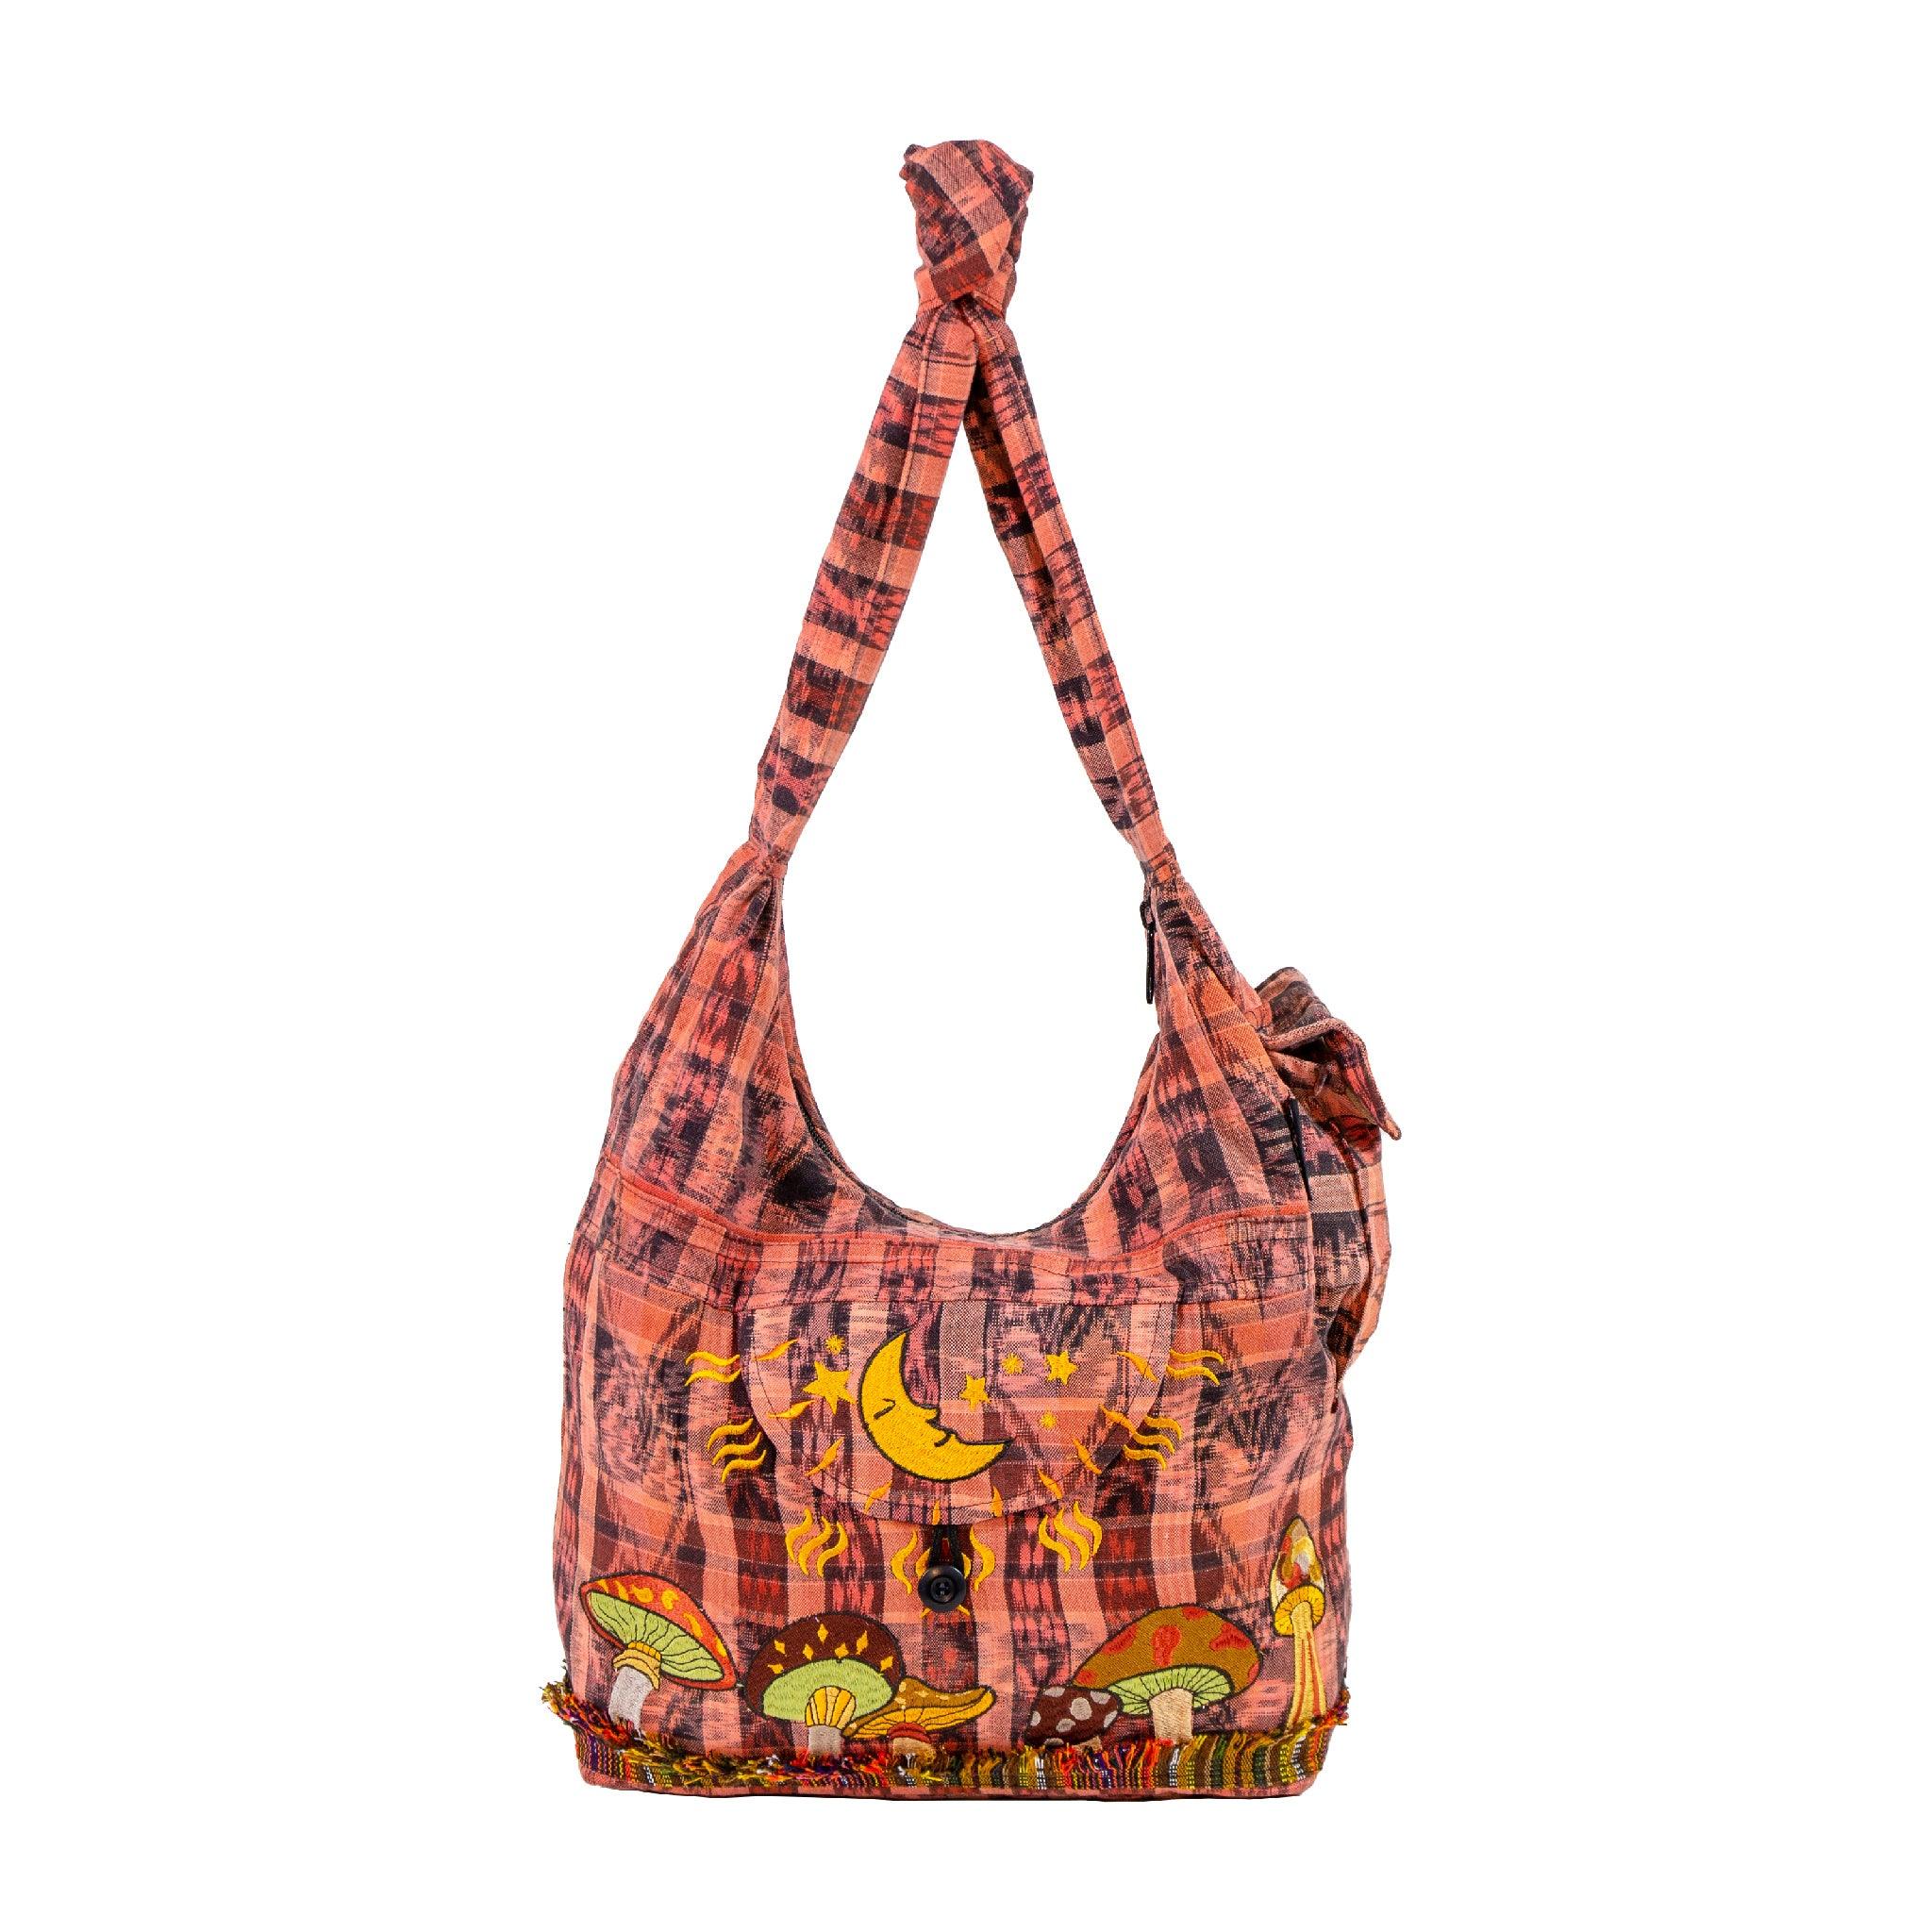 Victoria's Secret Canvas Tote Bag Logo Straps - $17 - From Krista